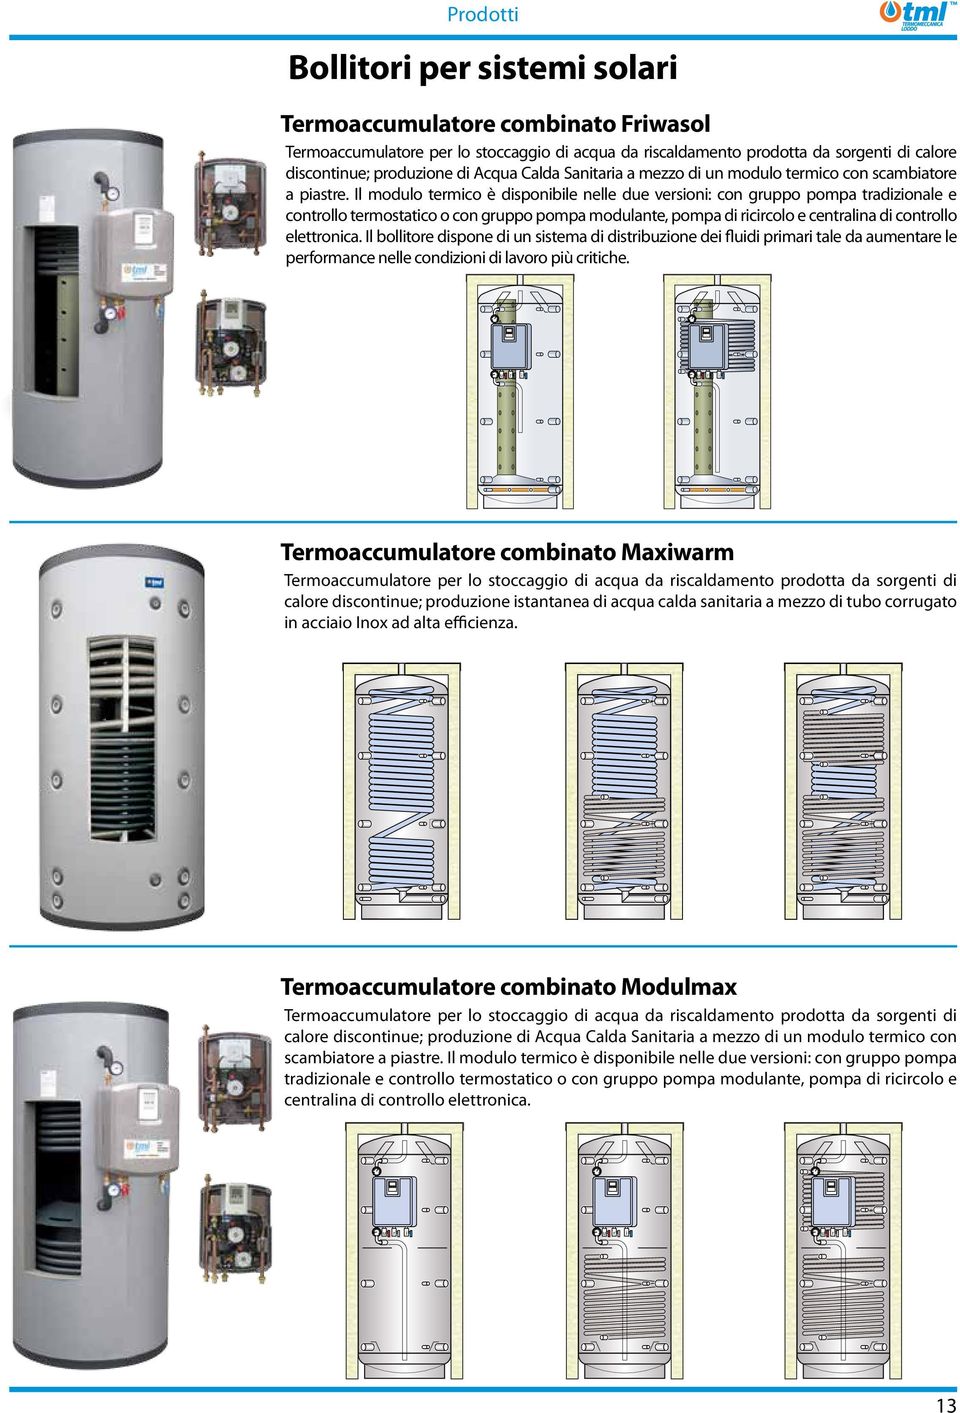 Il modulo termico è disponibile nelle due versioni: con gruppo pompa tradizionale e controllo termostatico o con gruppo pompa modulante, pompa di ricircolo e centralina di controllo elettronica.